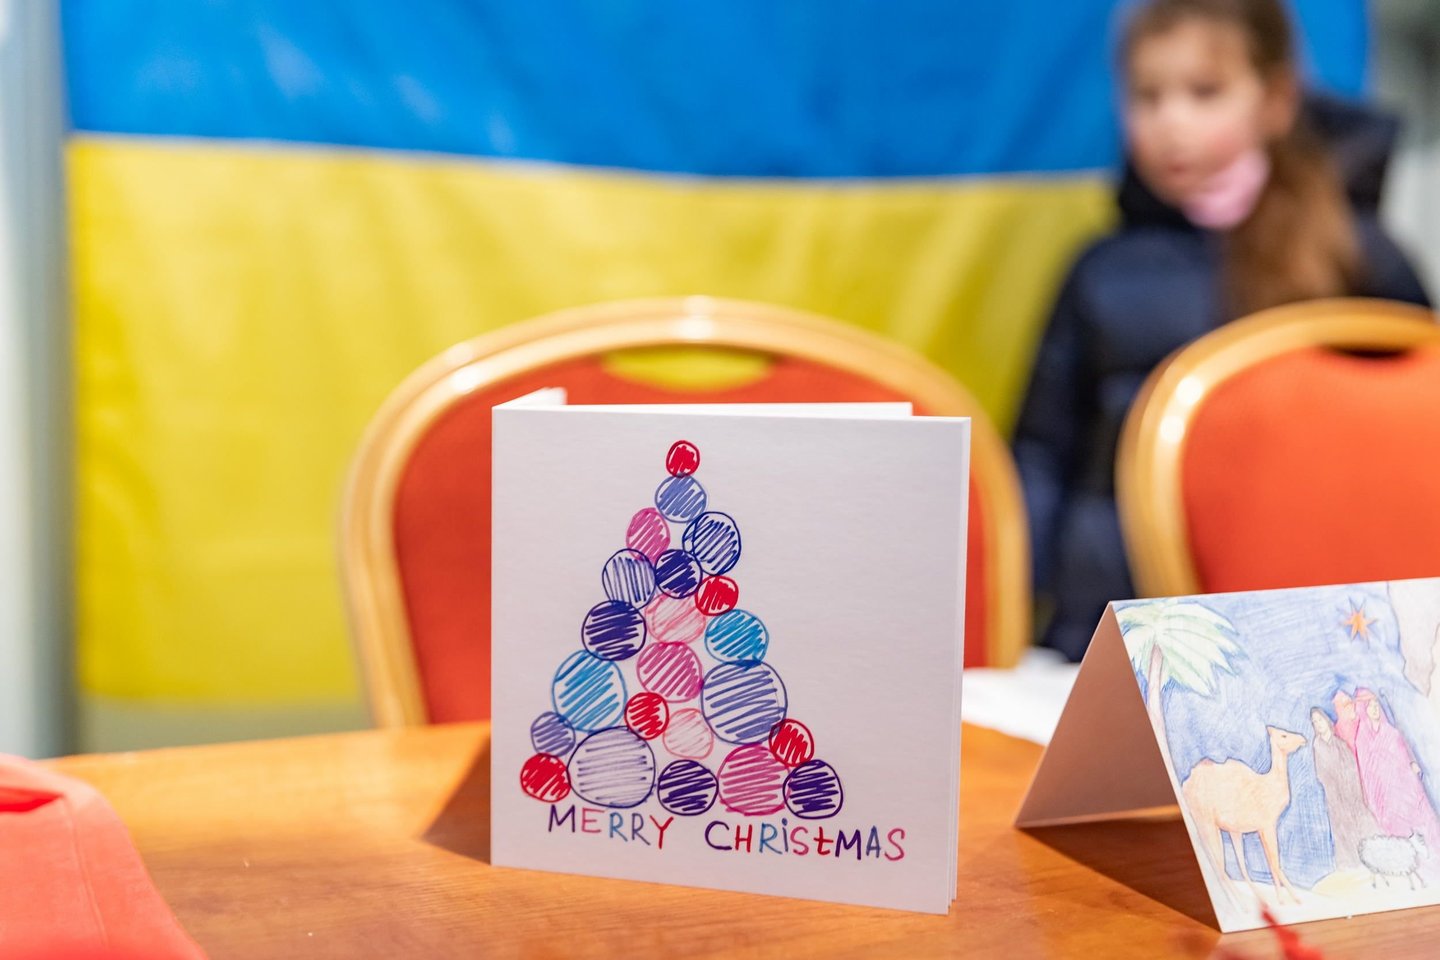 Gruodžio 28 d., nuo 16 iki 19 val., prie kalėdinės eglės ukrainiečių vaikus pasitiks šimtai savanorių, kurie keps spurgytes, vaišins arbata, karštu šokoladu.<br> Pranešimo spaudai nuotr.